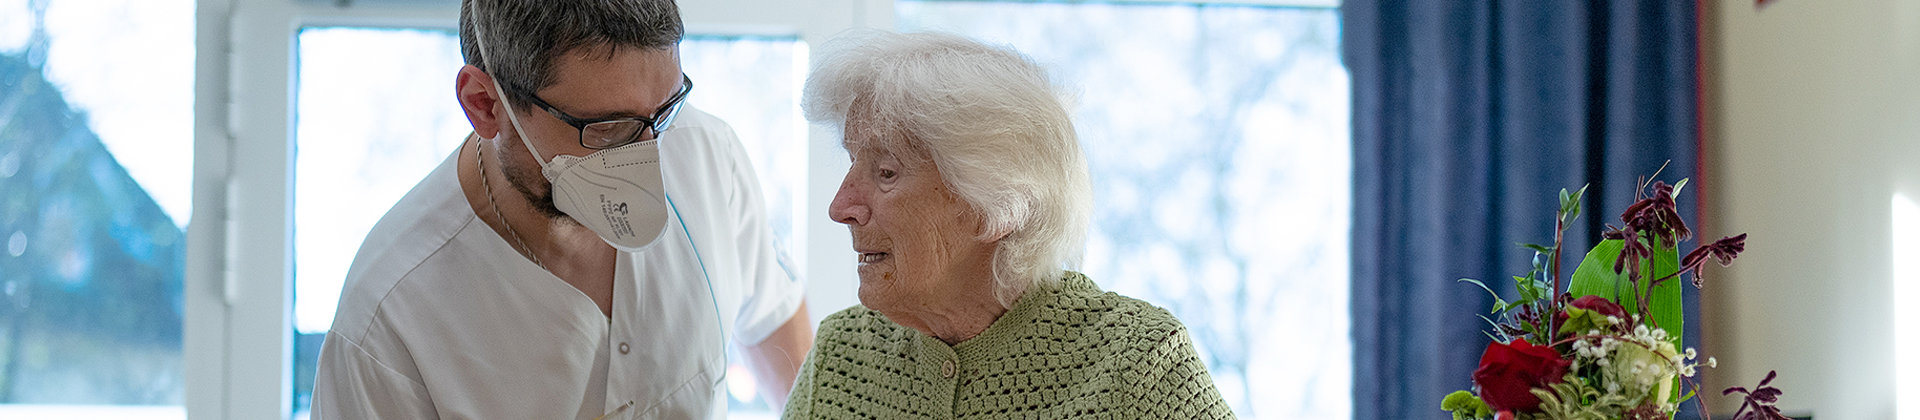 Bild | Pfleger spricht mit Seniorin